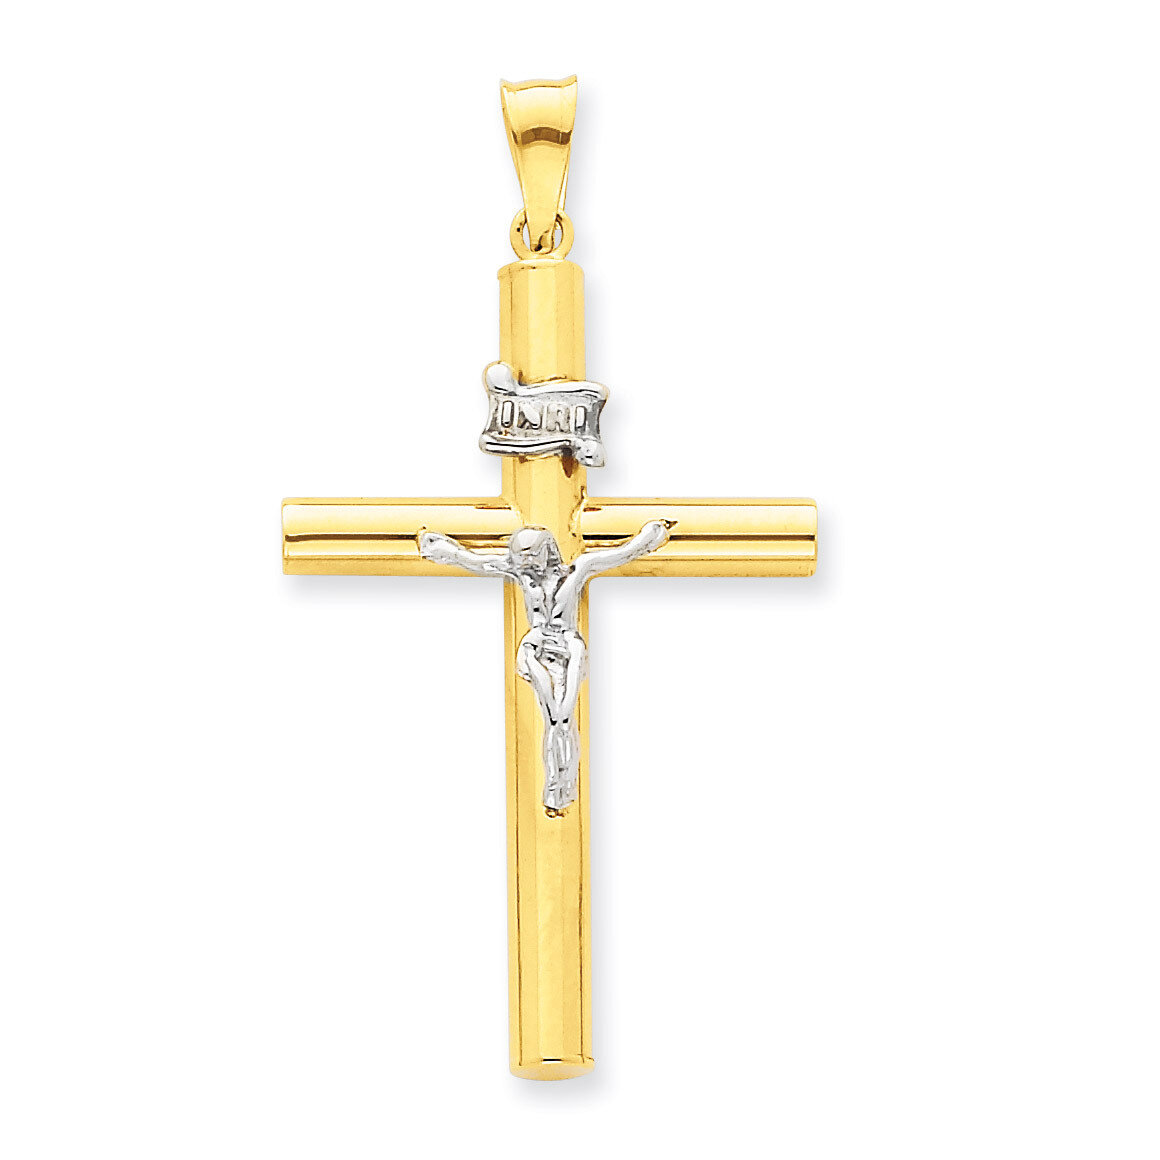 INRI Crucifix Pendant 14k Two-Tone Gold K3728